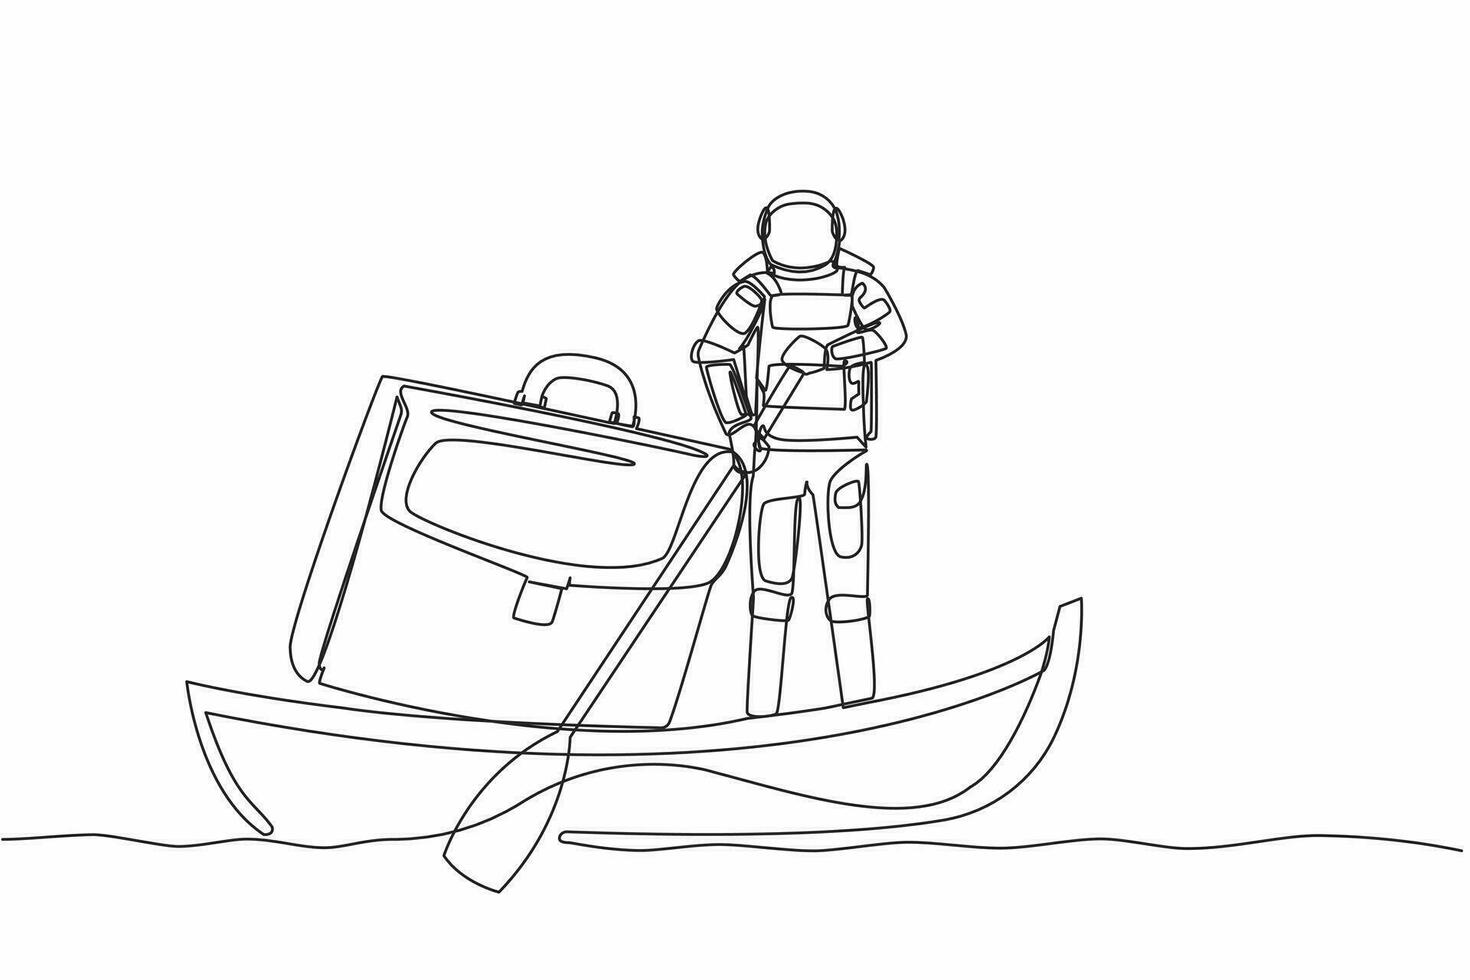 continuo uno linea disegno giovane astronauta andare in barca lontano su barca con valigetta. segreto documento Conservazione nel spazio missioni. cosmonauta esterno spazio. singolo linea disegnare design vettore grafico illustrazione